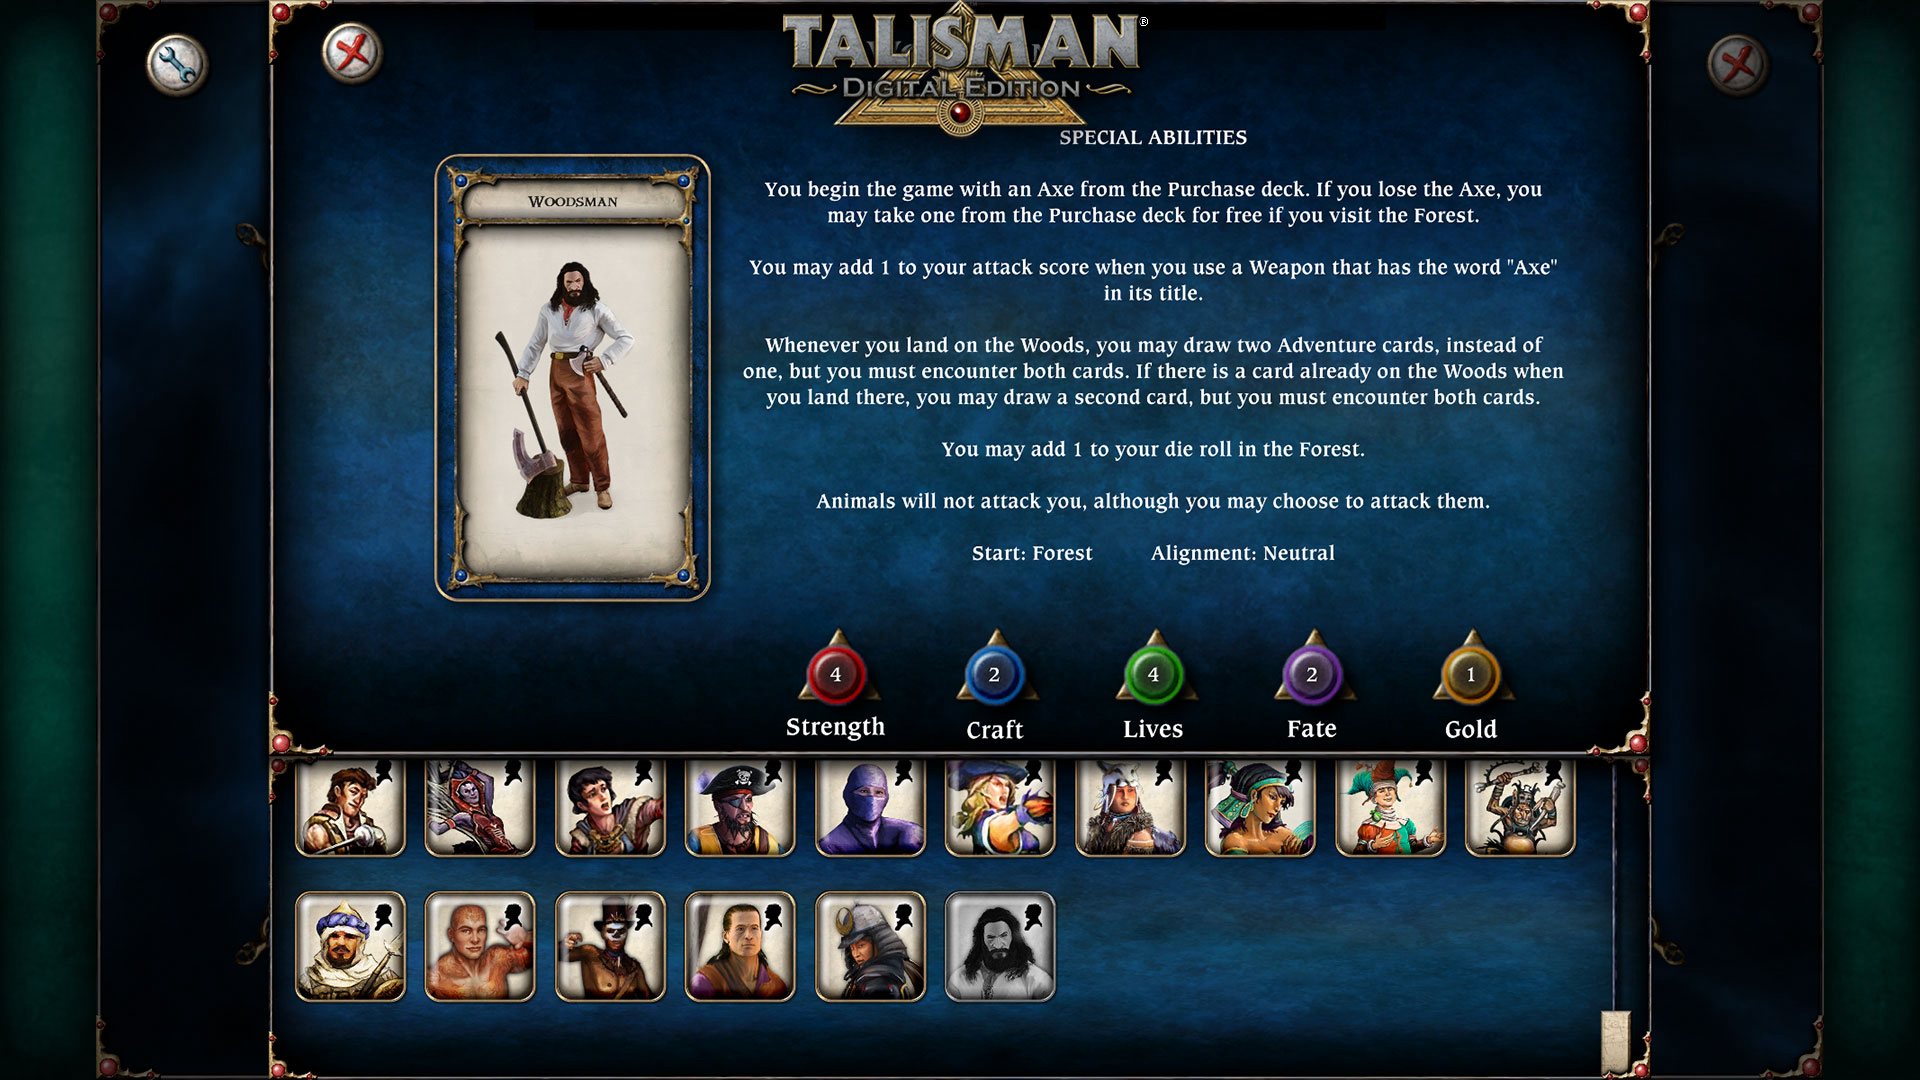 Talisman - Character Pack #17 - Woodsman DLC Steam CD Key [USD 1.14]